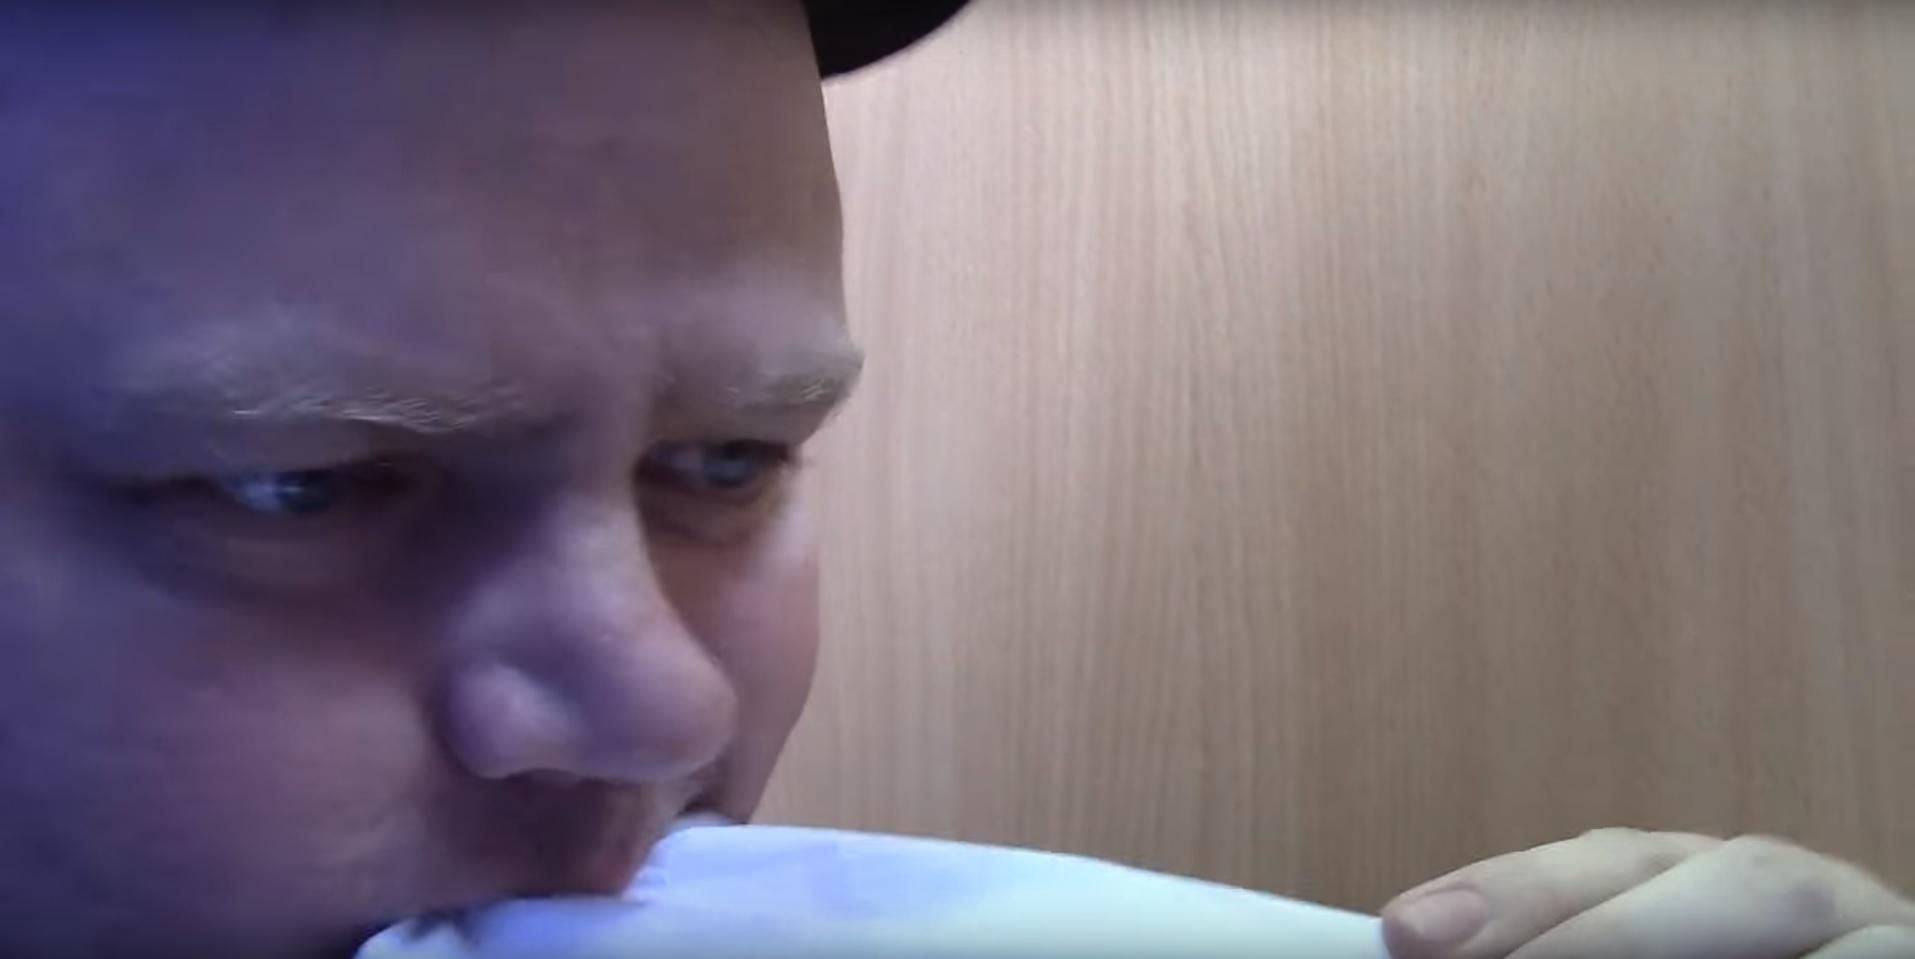 У Росії чоловік з'їв бюлетень, аби продемонструвати протест проти всіх кандидатів: відео